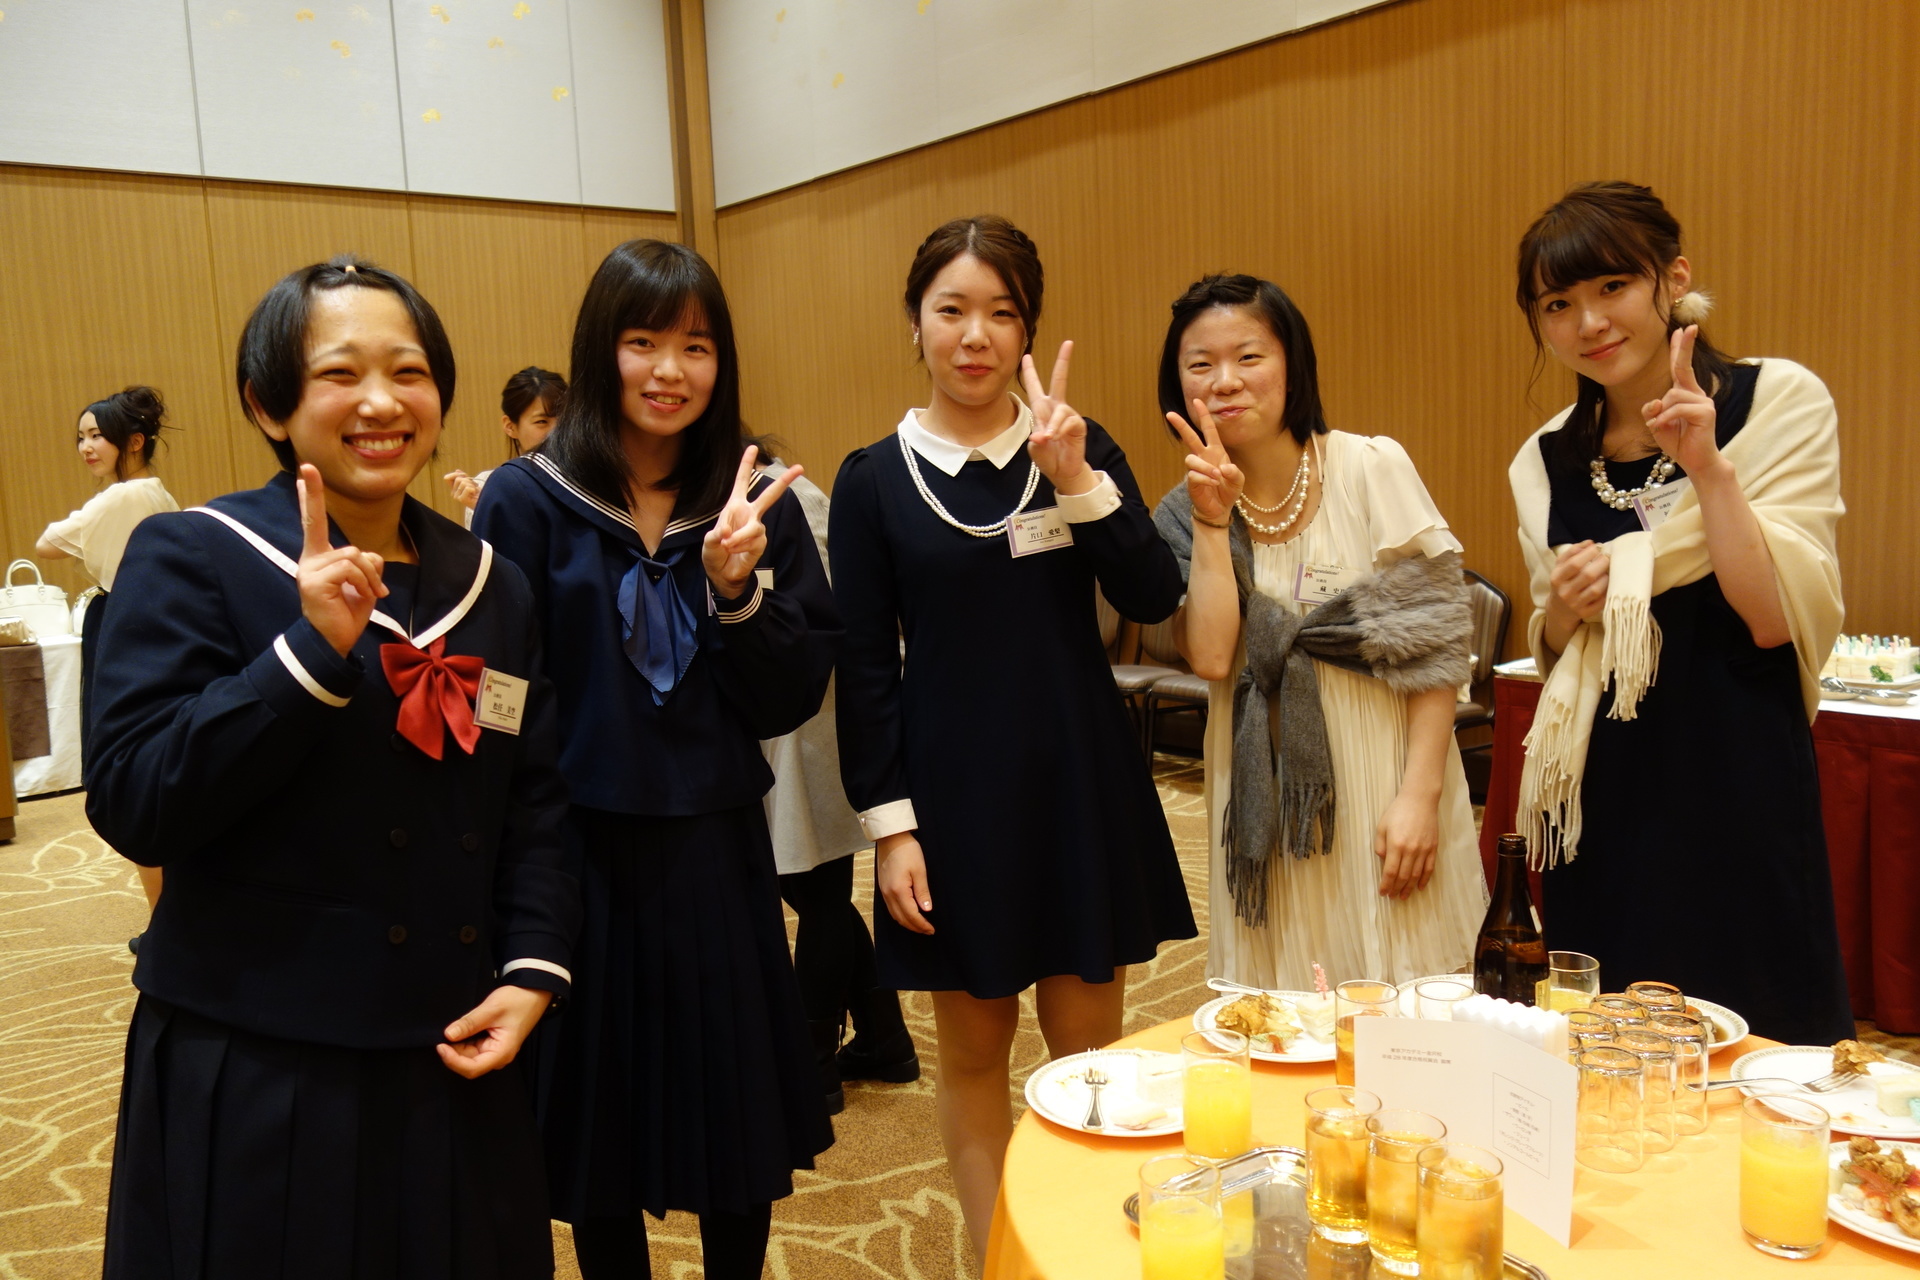 合格祝賀会 みなさま おめでとうございます 東京アカデミー金沢校 教員採用試験 看護師国家試験 公務員試験 のブログ